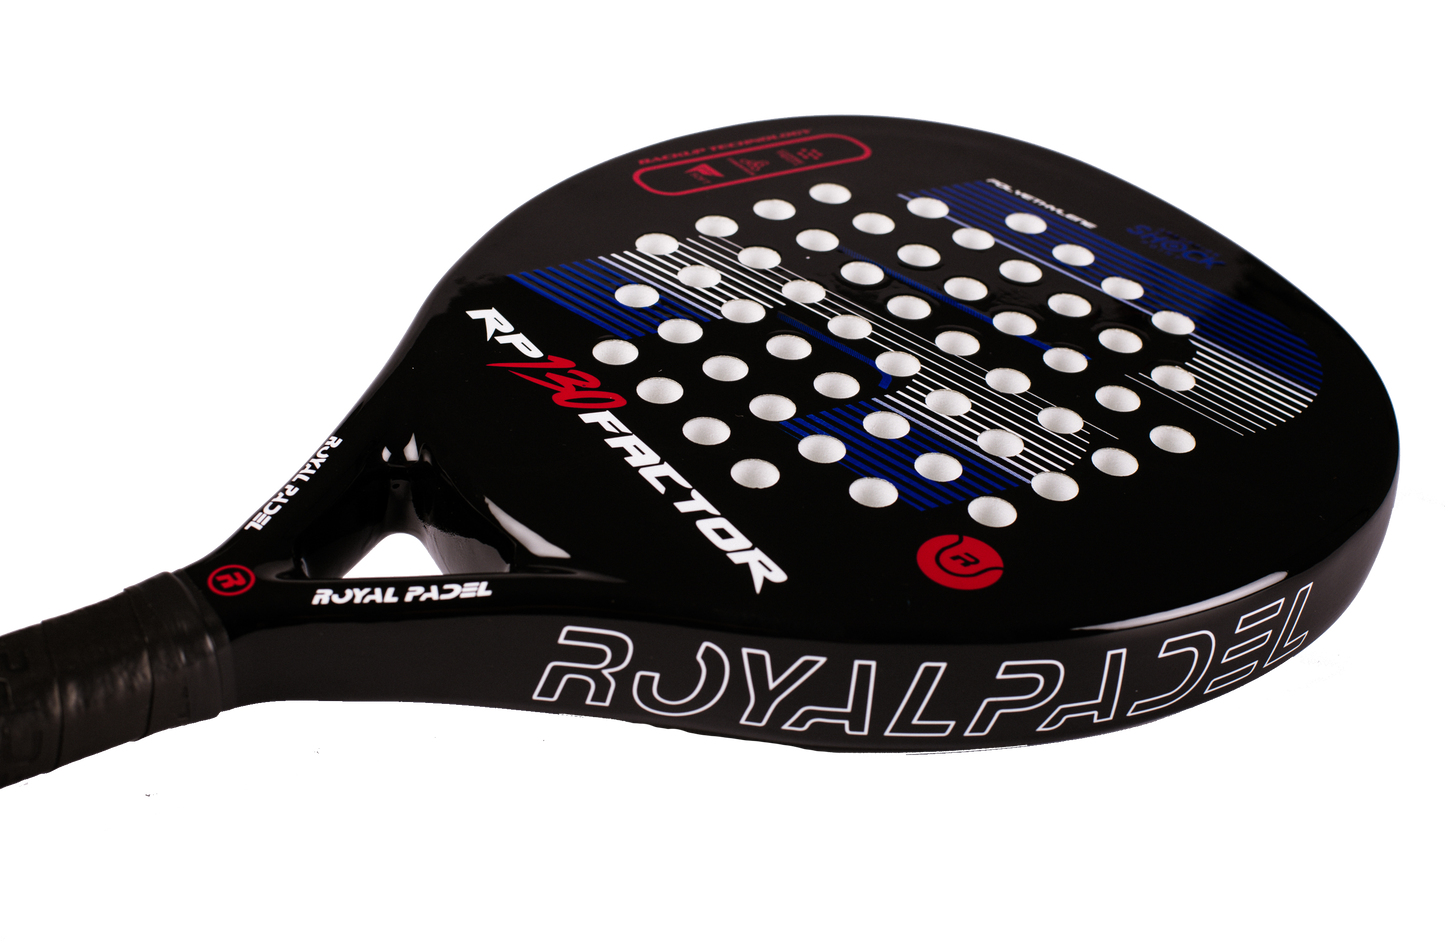 Royal Padel Factor 130 Padel Racket